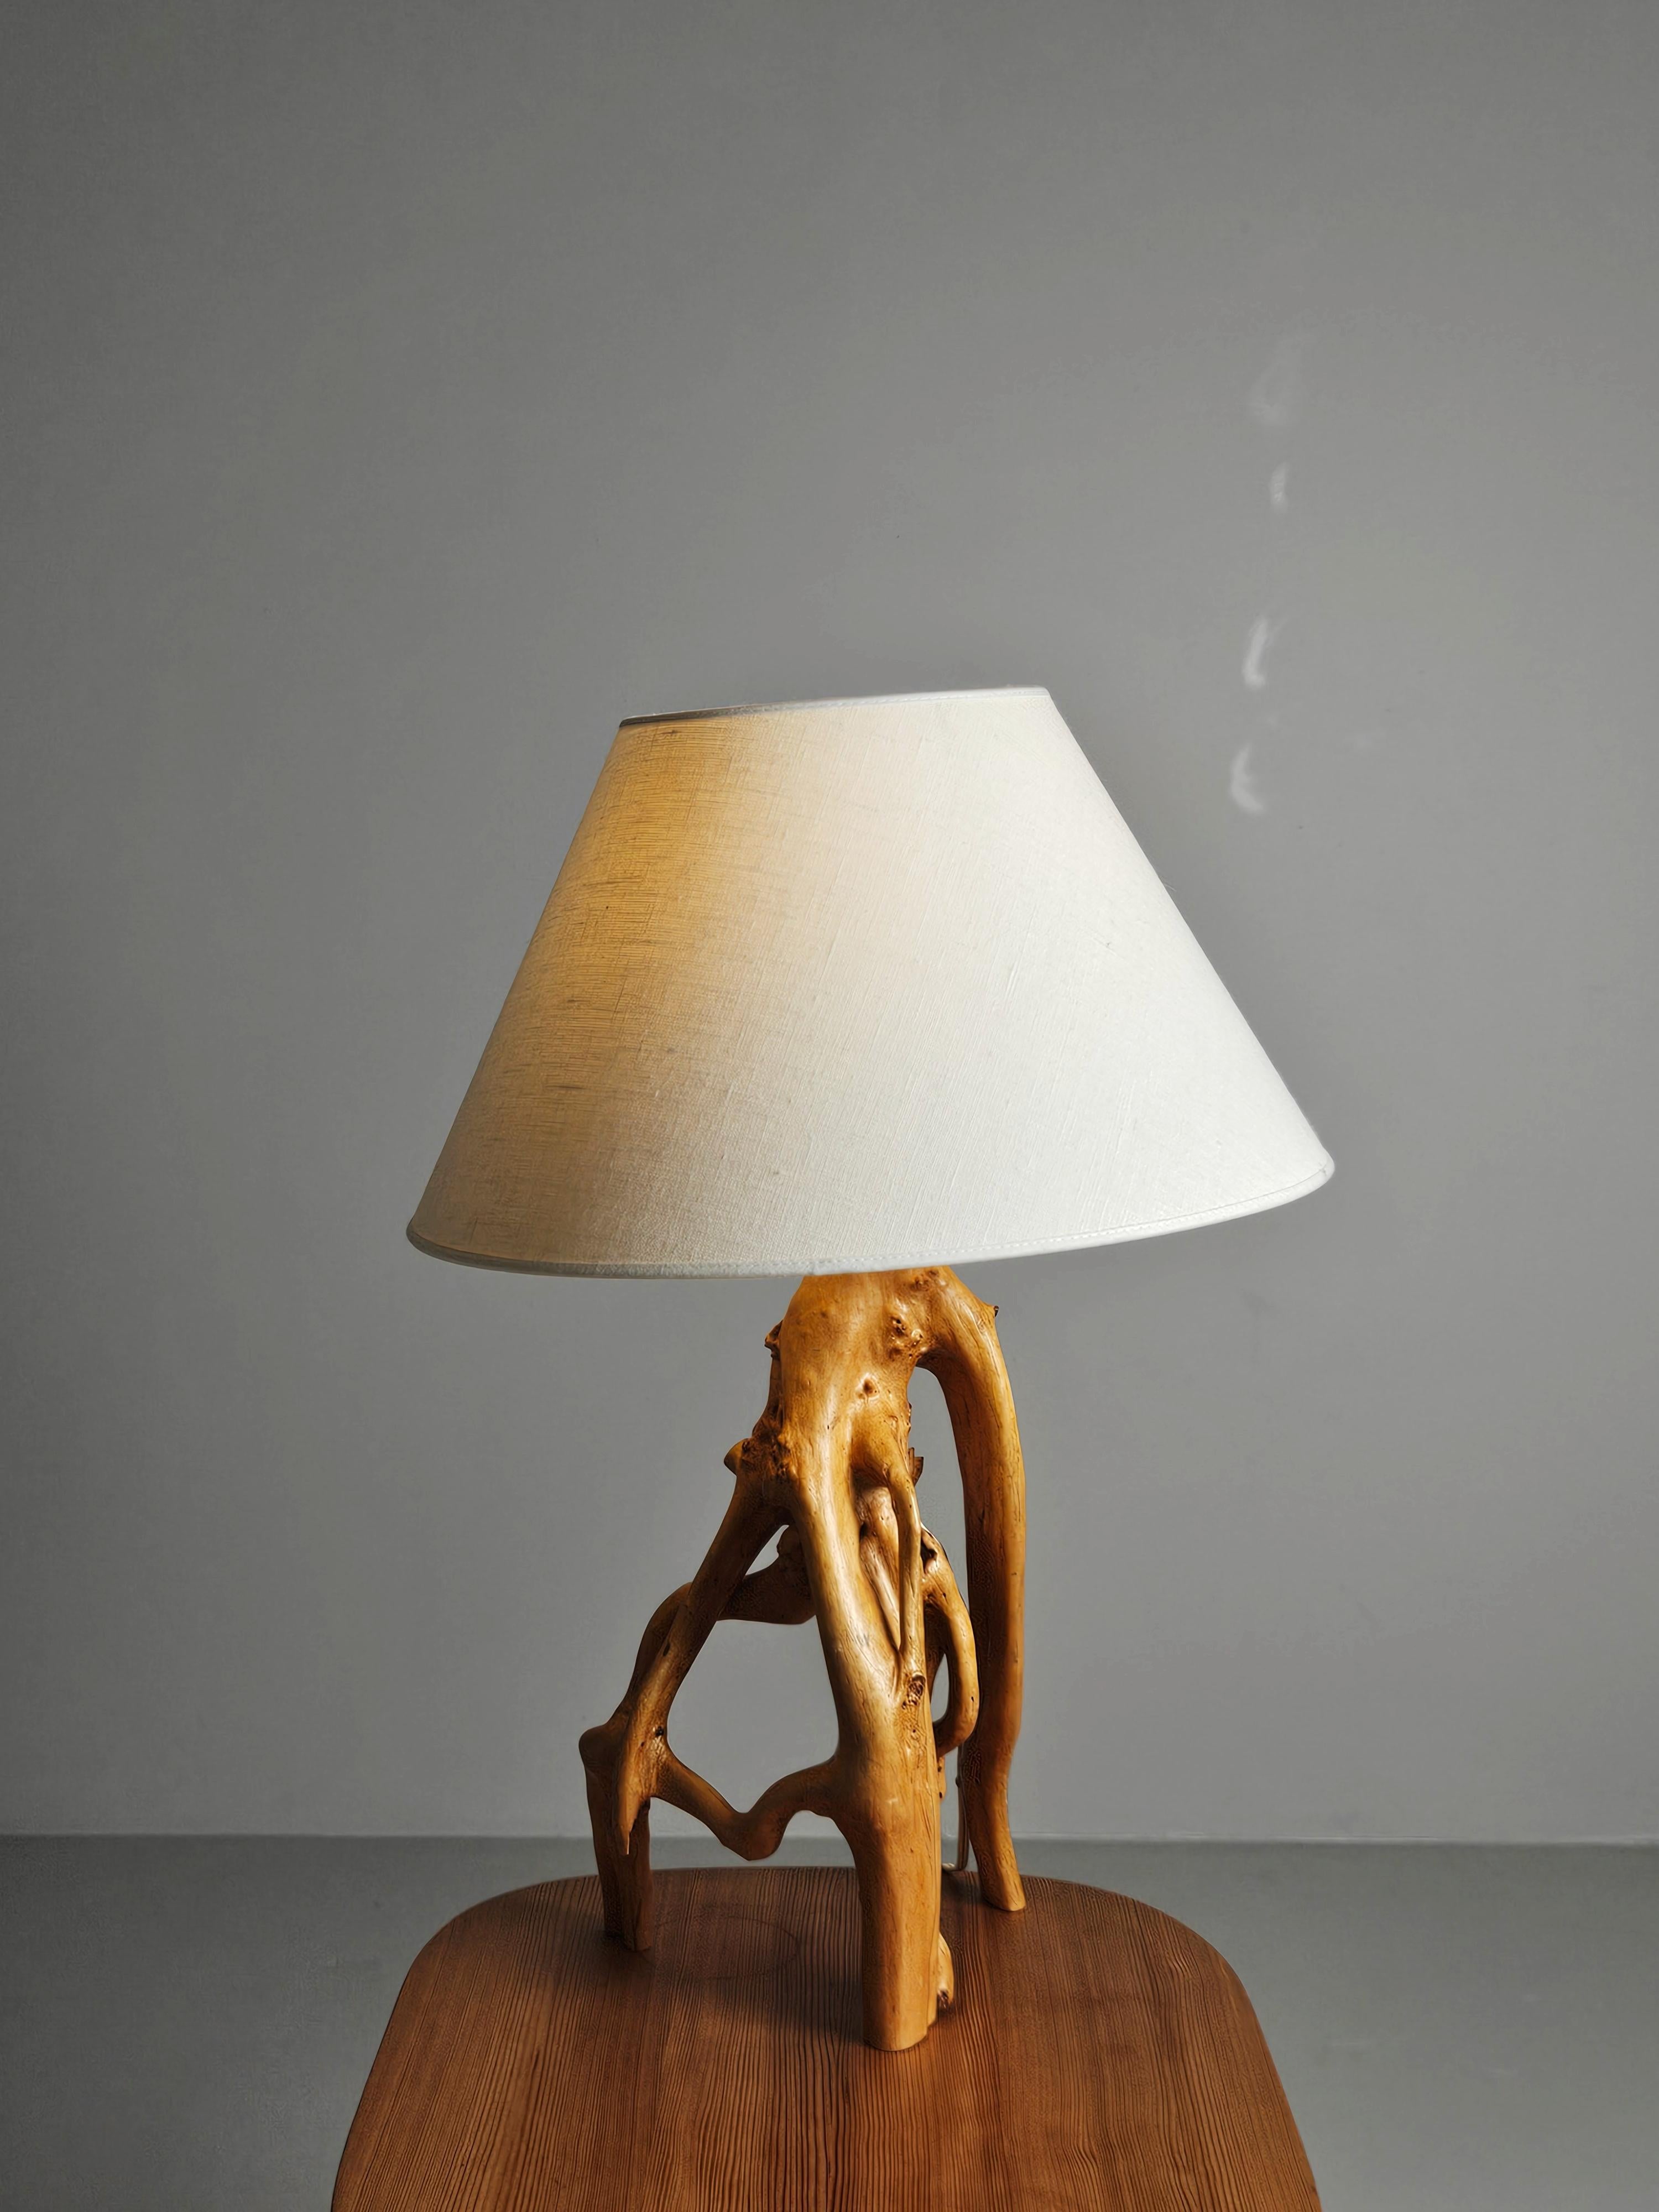 Modern Scandinavian Tischlampe. Hergestellt aus Birke mit einer skulpturalen Form. 

